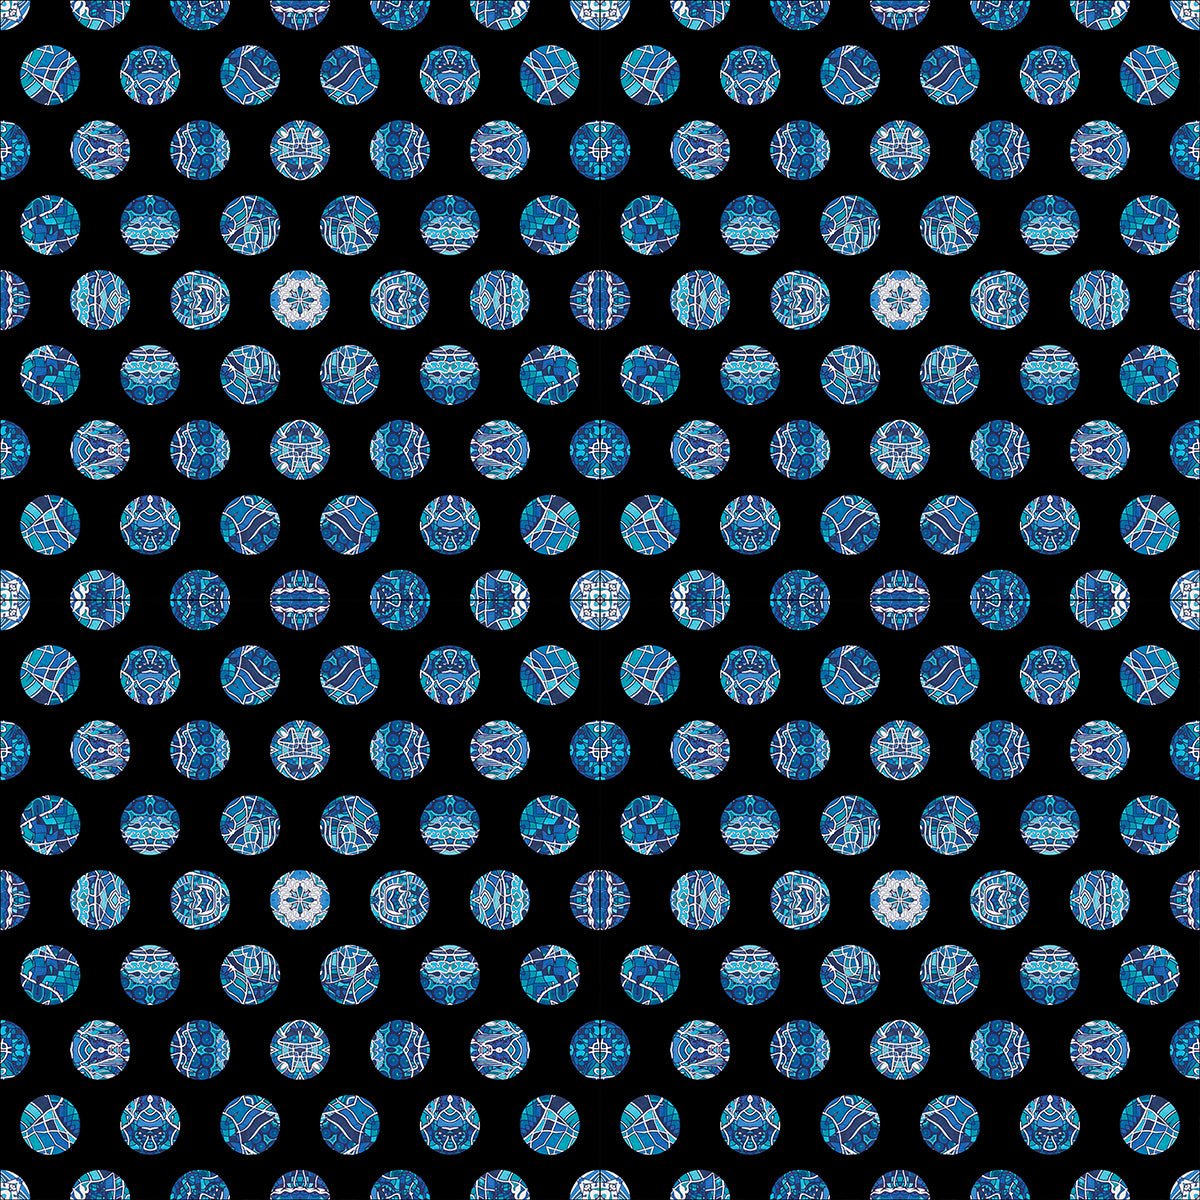 Badetuch • Wassergeister – Punkte, blau, schwarz, weiß - Wonderwazek